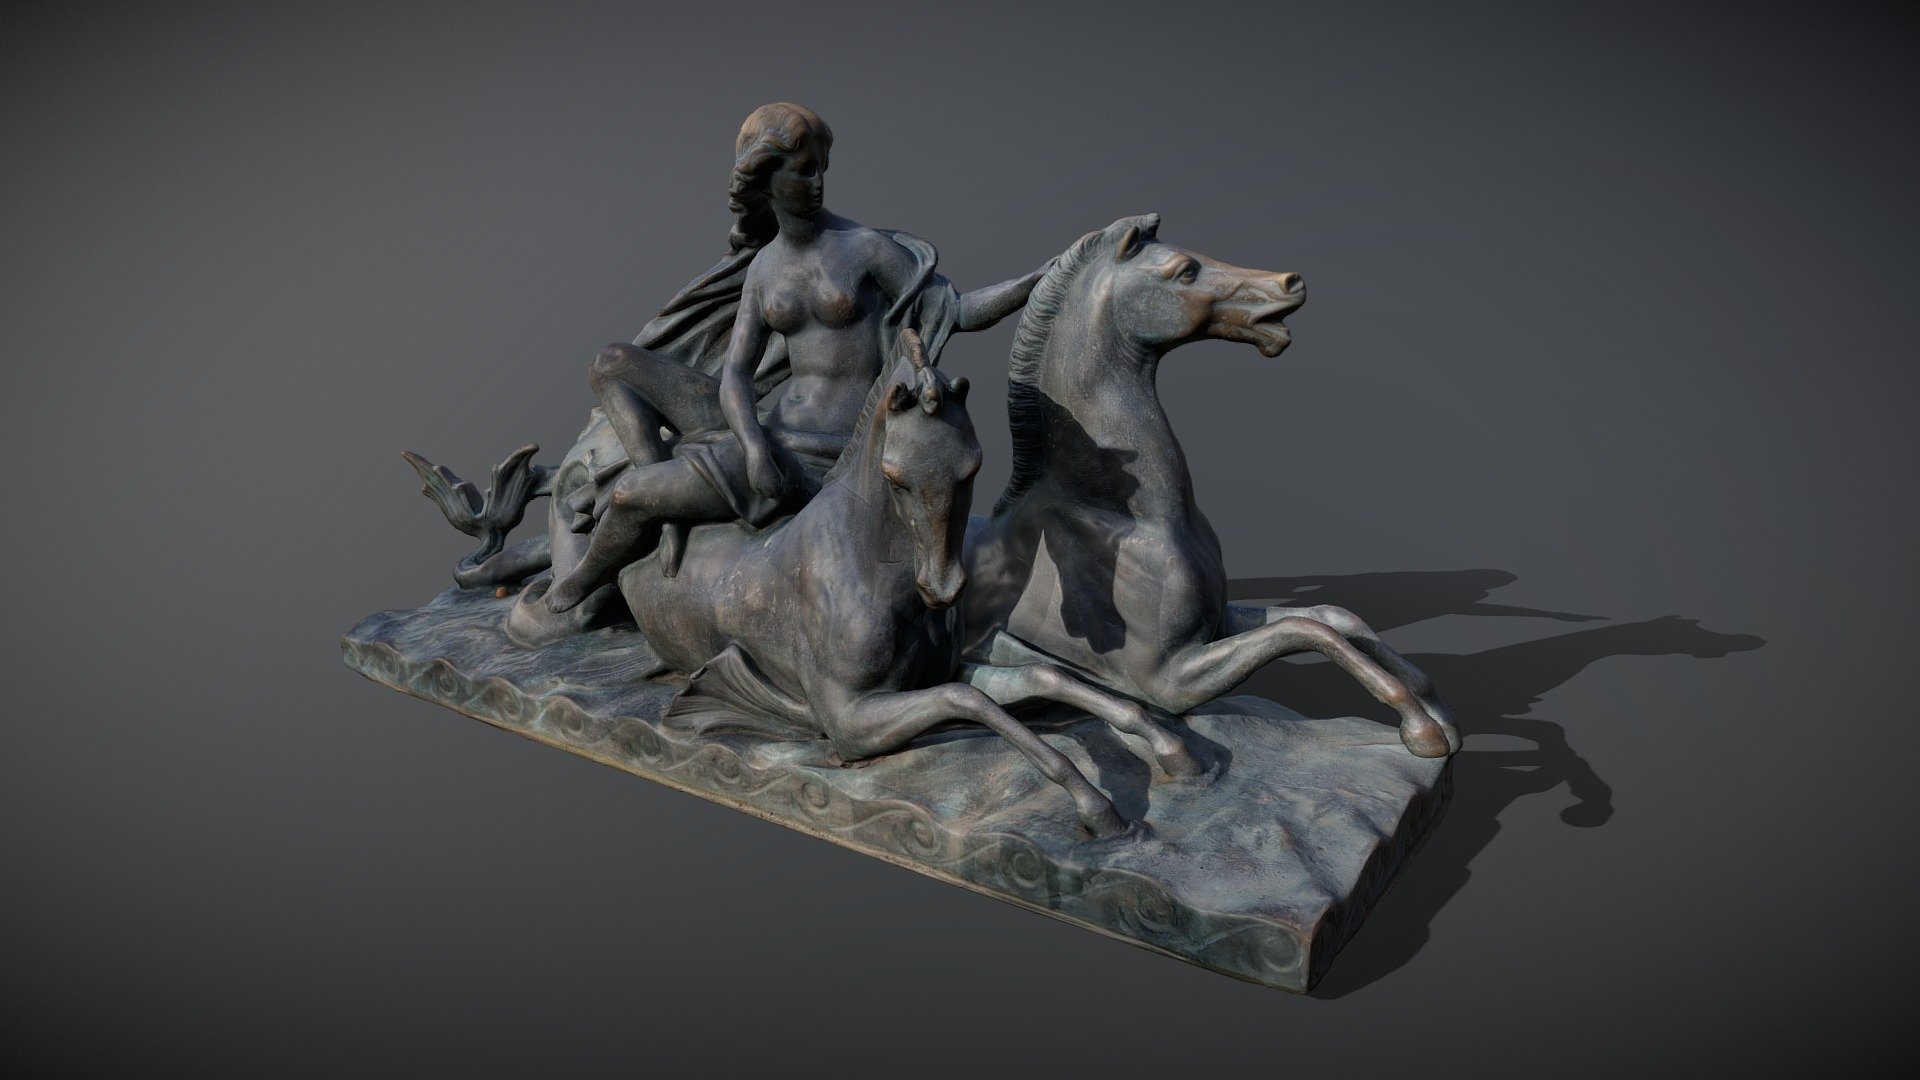 bronze sculpture Park  Sanssouci, Potsdam, Germany - bronze sculpture - 3D model by majme 3d model